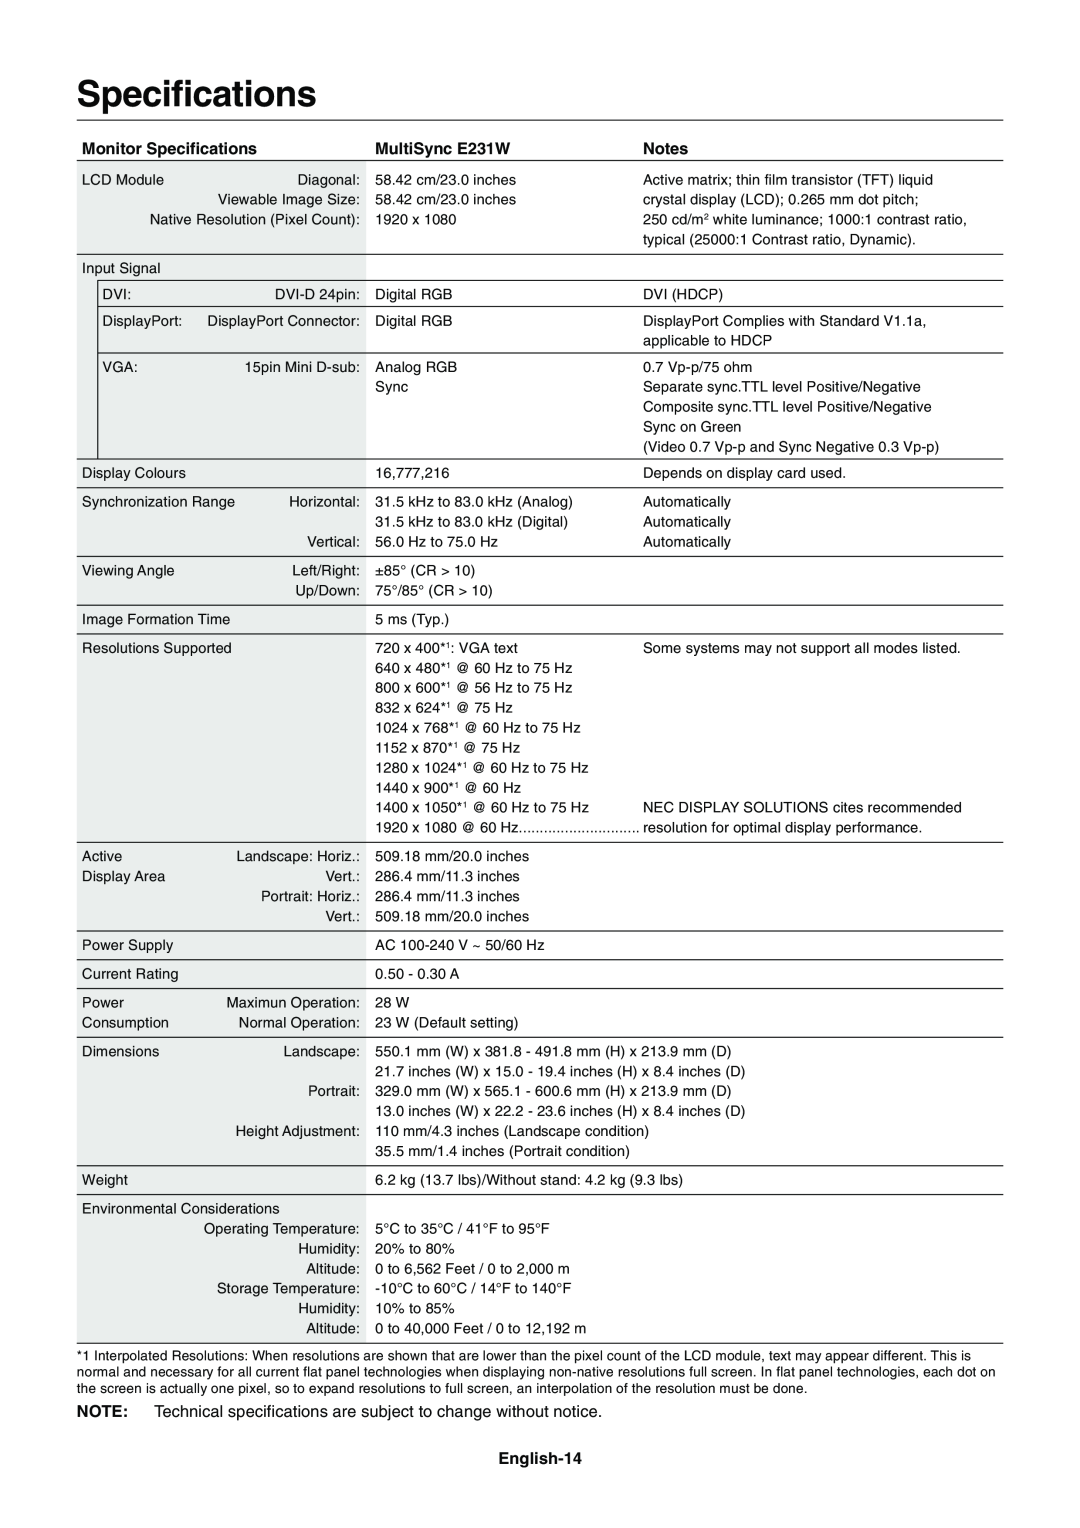 NEC E231W-BK user manual Monitor Specifications, MultiSync E231W, English-14 